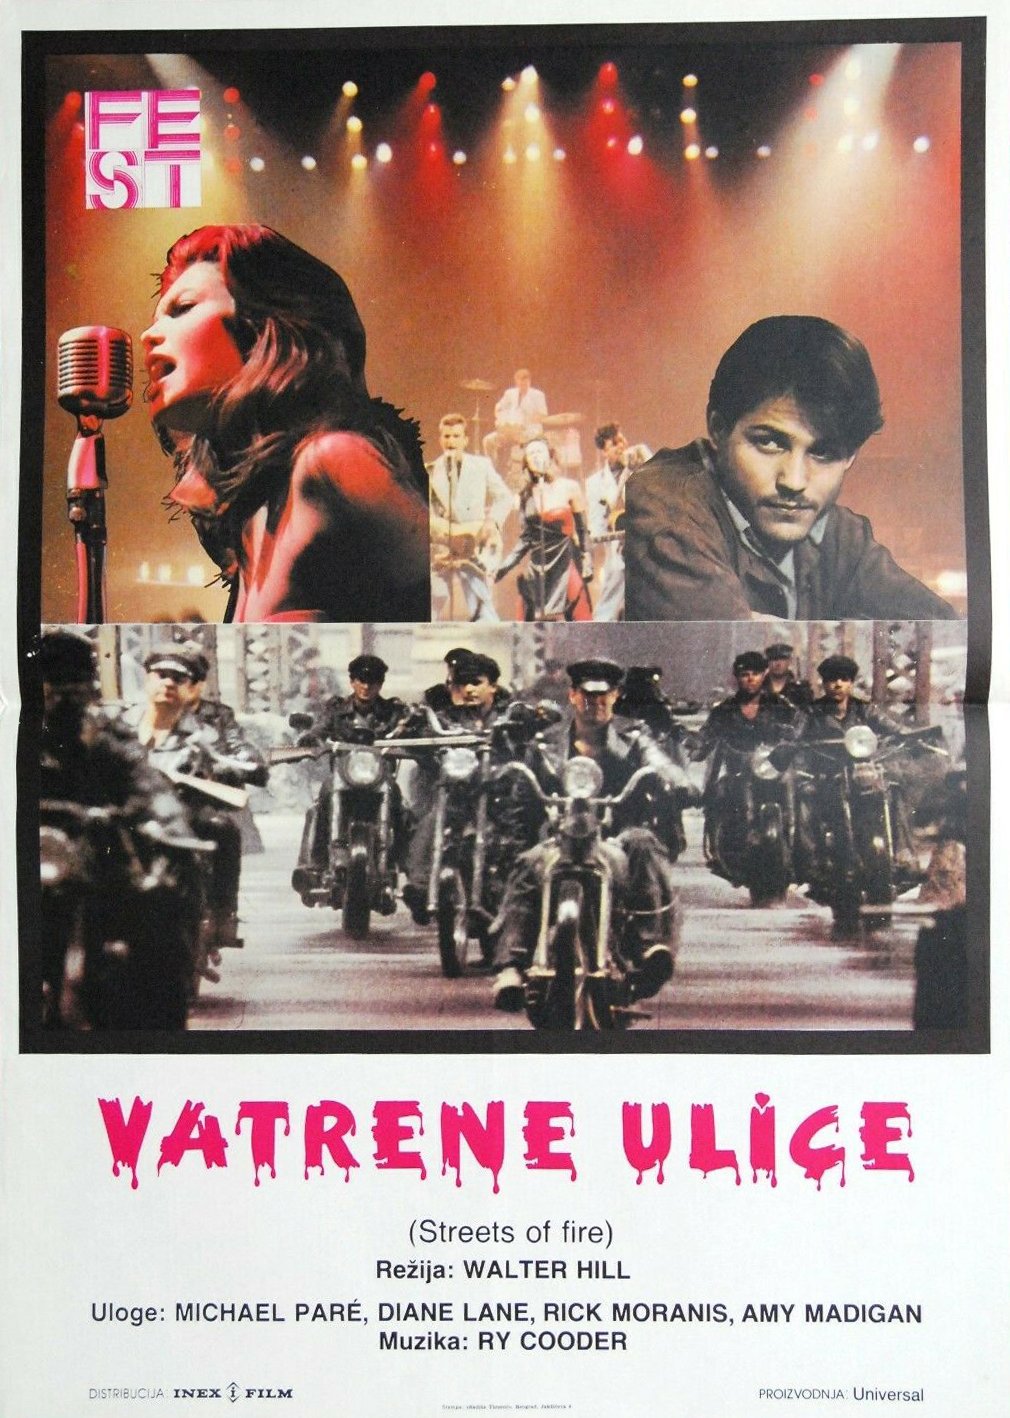 You are currently viewing Godišnjica kinopremijere filma Vatrene ulice kultnog redatelja Waltera Hilla